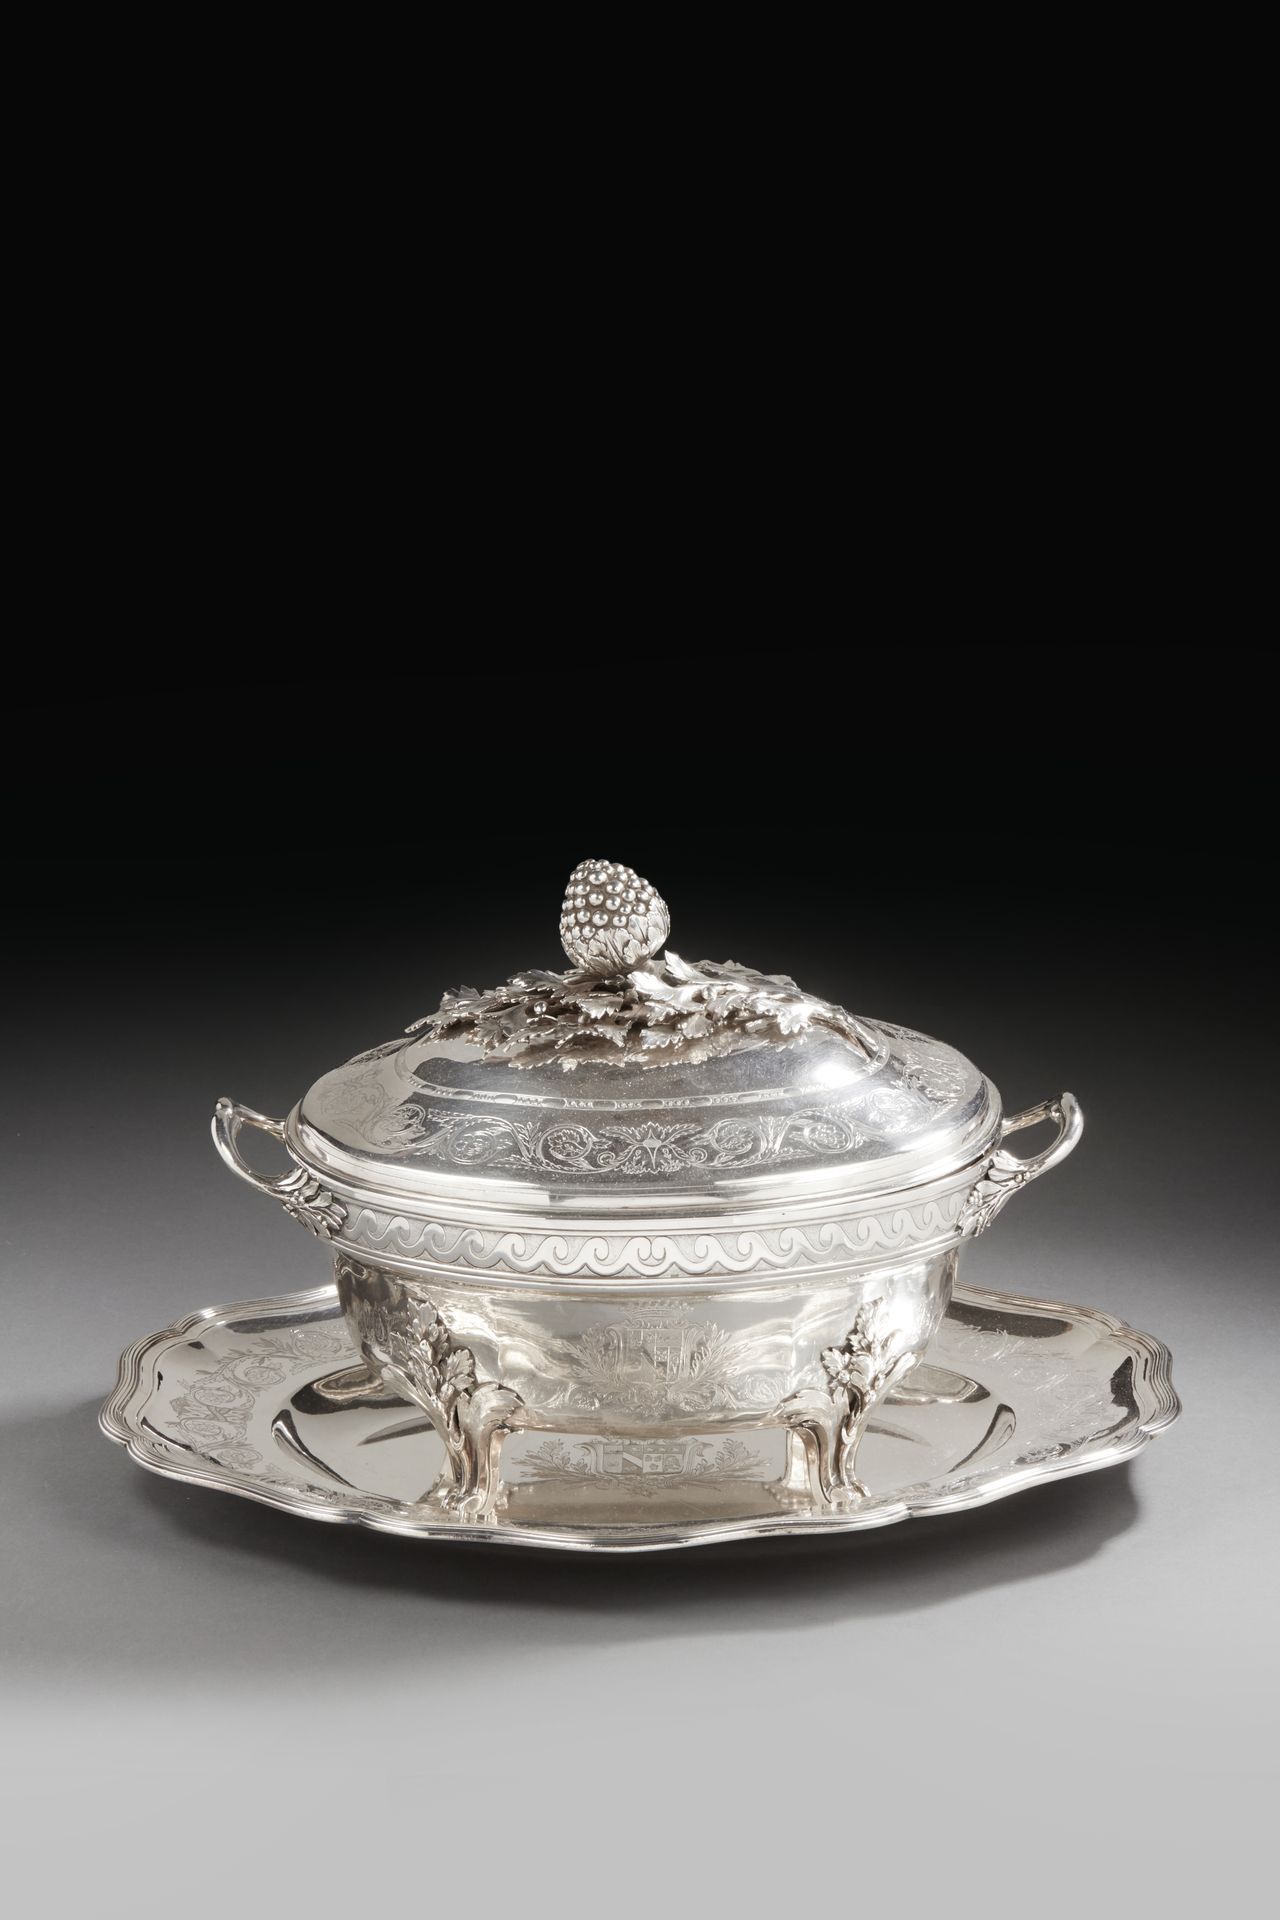 Null PARÍS 1782 - 1783
Sopera de plata, completa con su marco y forro. El plato,&hellip;